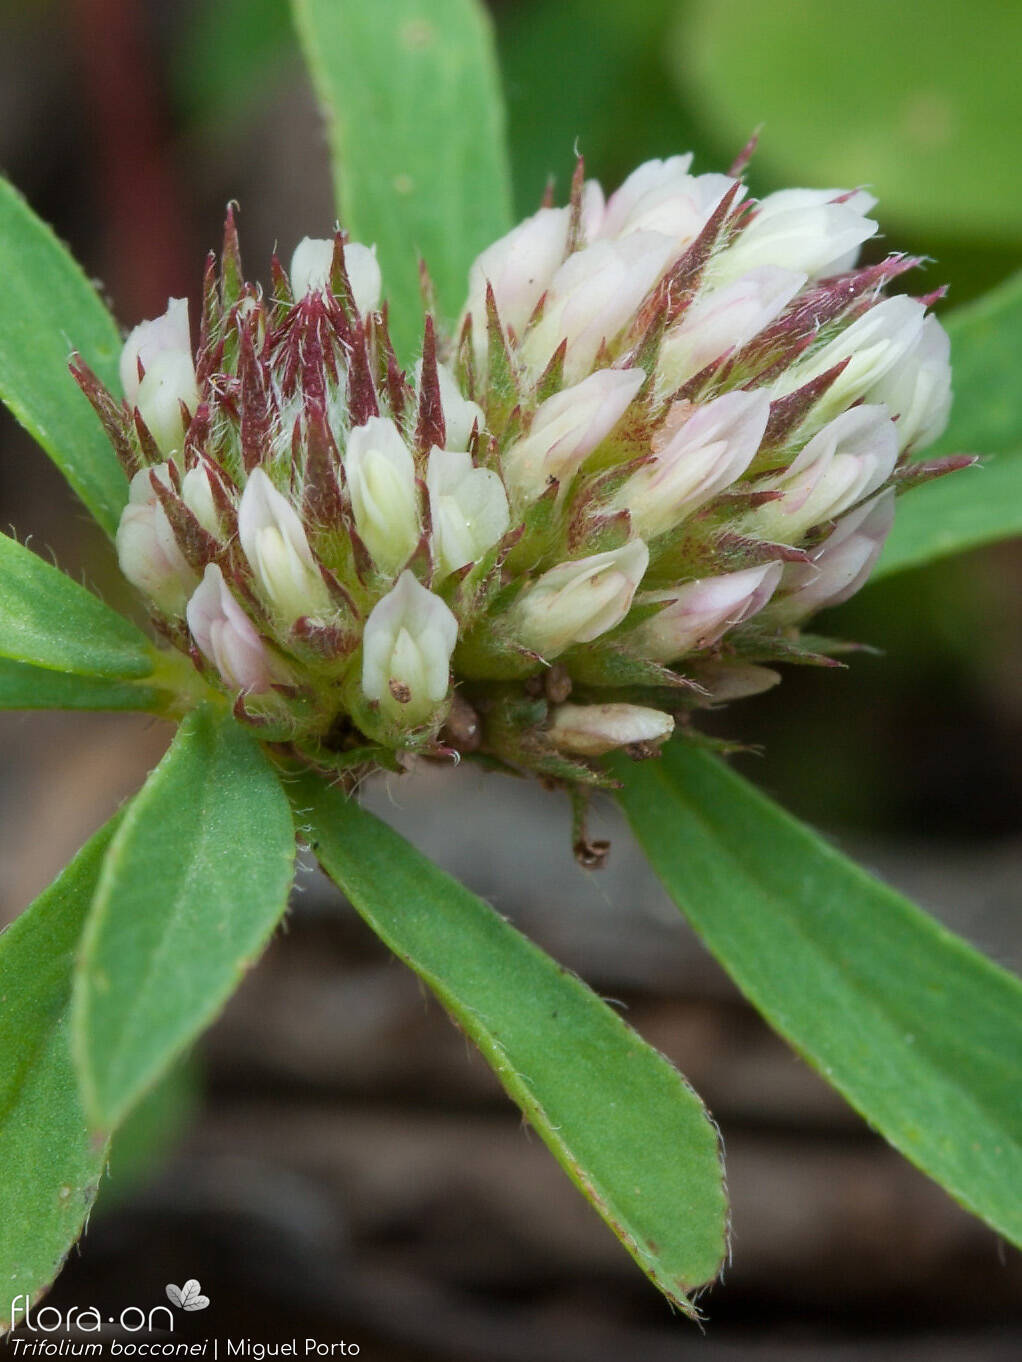 Trifolium bocconei - Flor (geral) | Miguel Porto; CC BY-NC 4.0